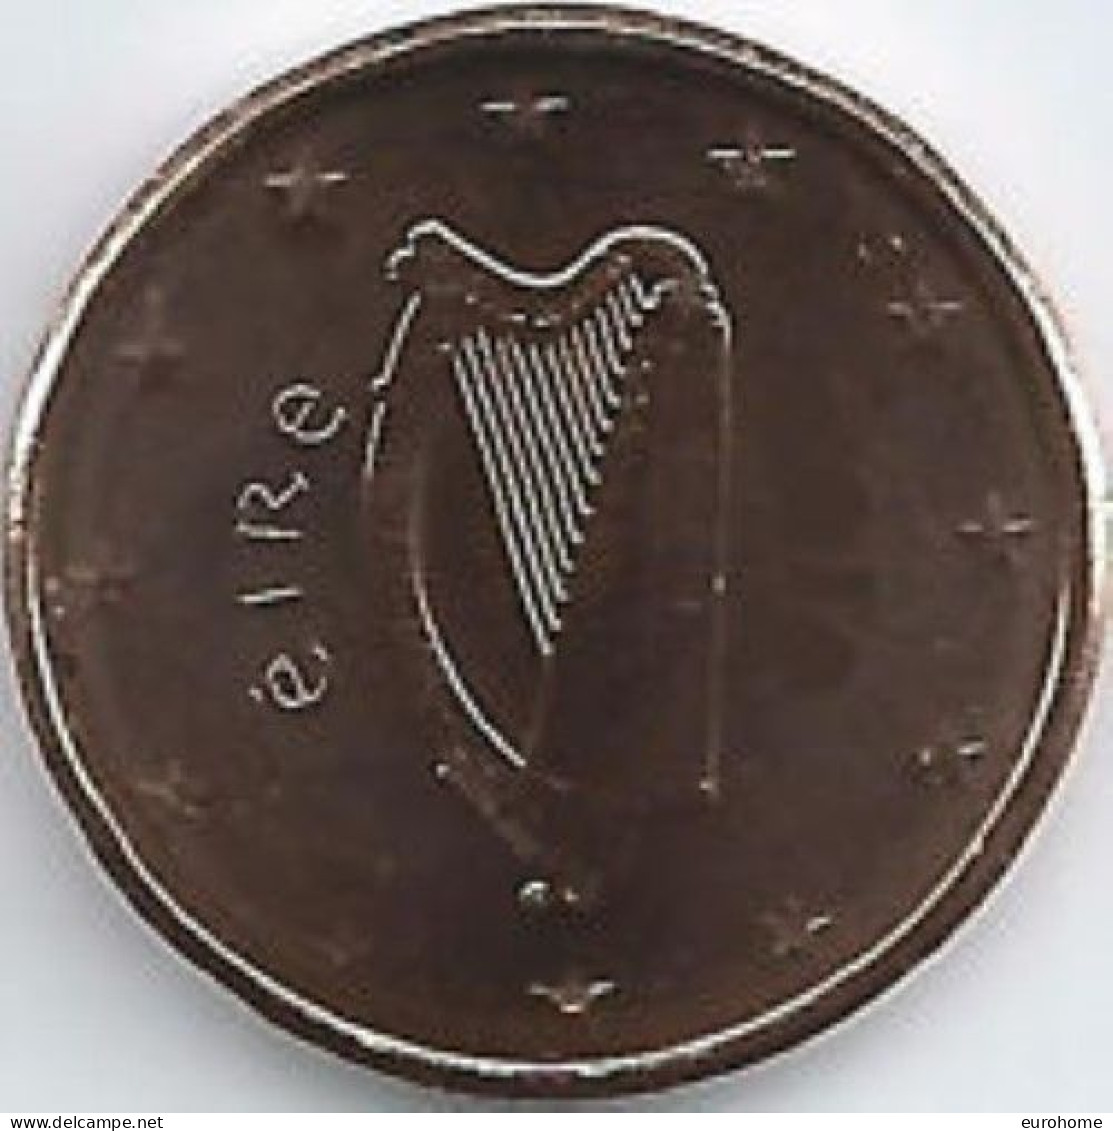 Ierland 2023  2 Cent  UNC Uit De BU  UNC Du Coffret  ZEER ZELDZAAM - EXTREME RARE  5.000 Ex !!! - Ierland